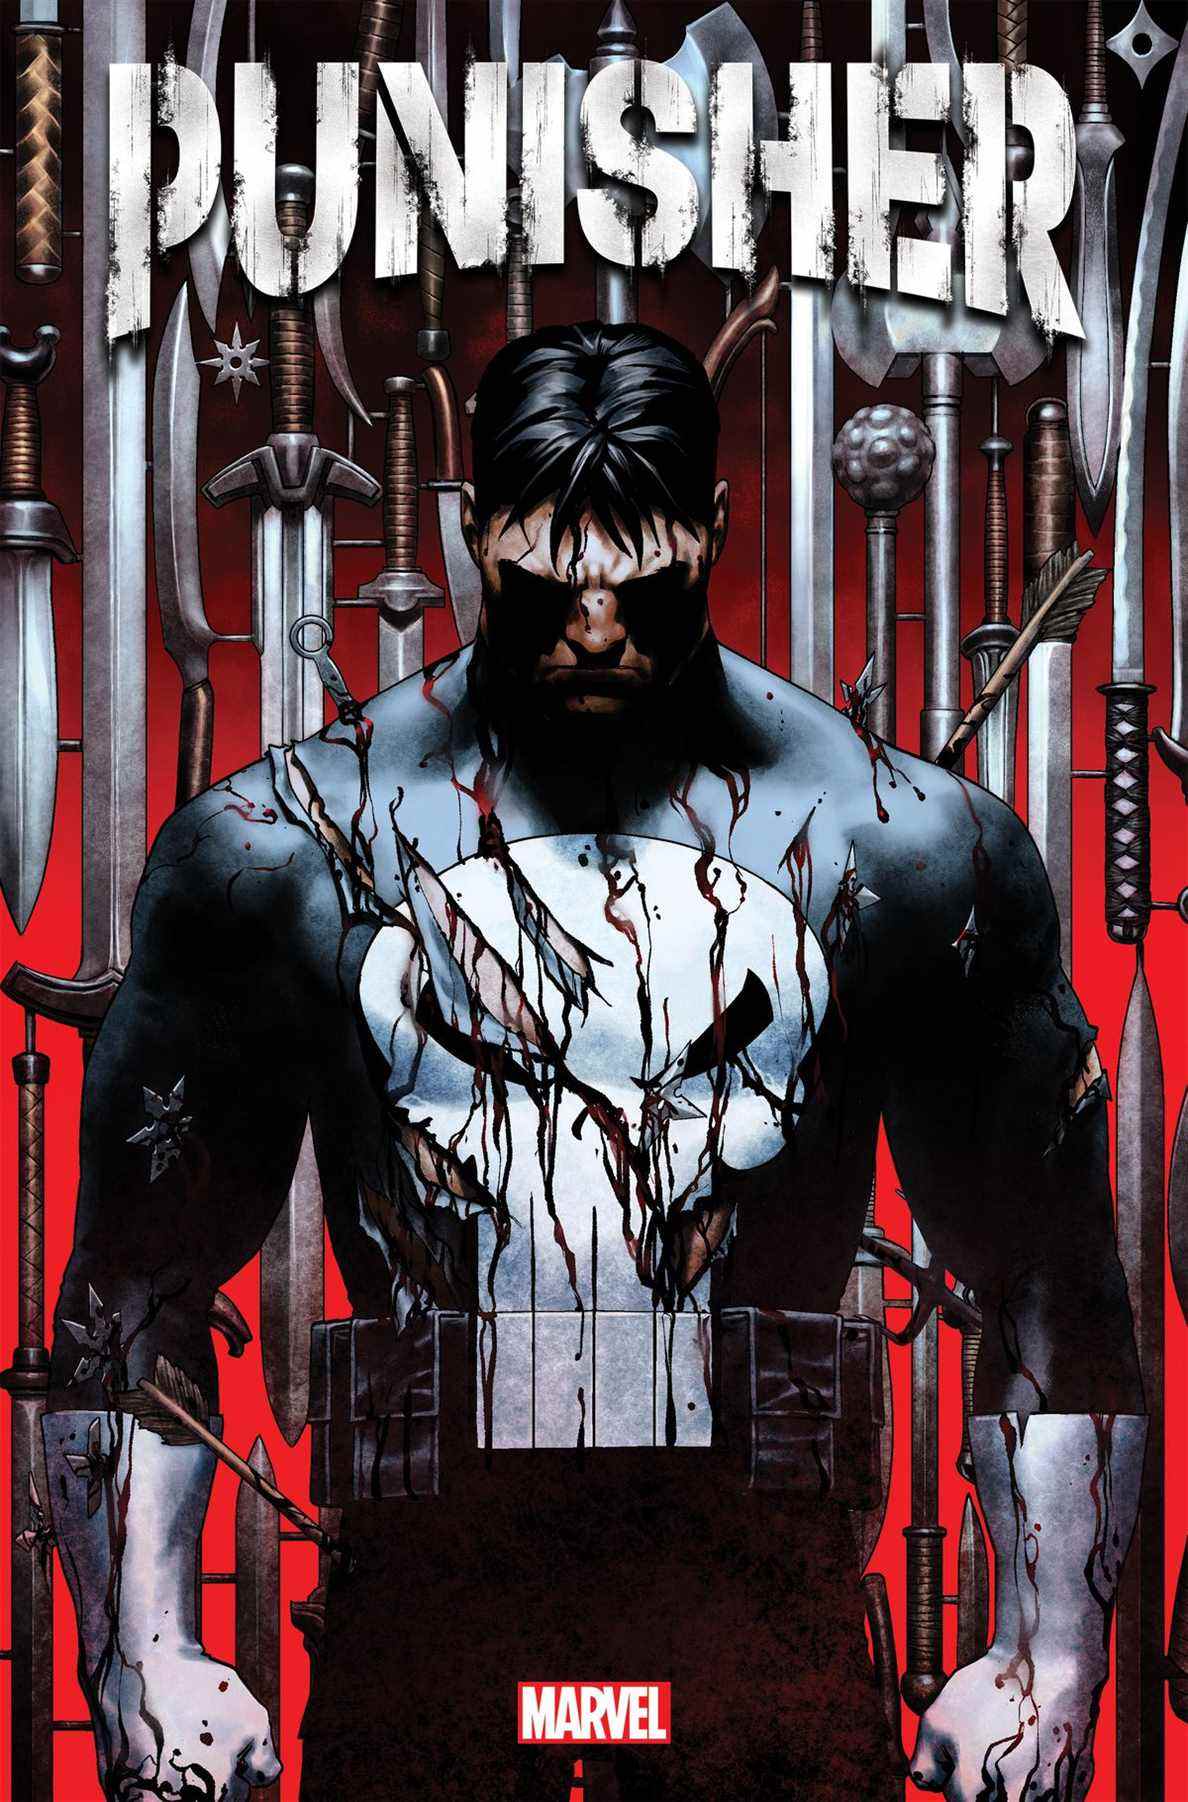 Frank Castle/The Punisher dans un costume déchiré et sanglant, se tient devant un arrière-plan de dizaines d'armes blanches sur la couverture de Punisher #1 (2022).